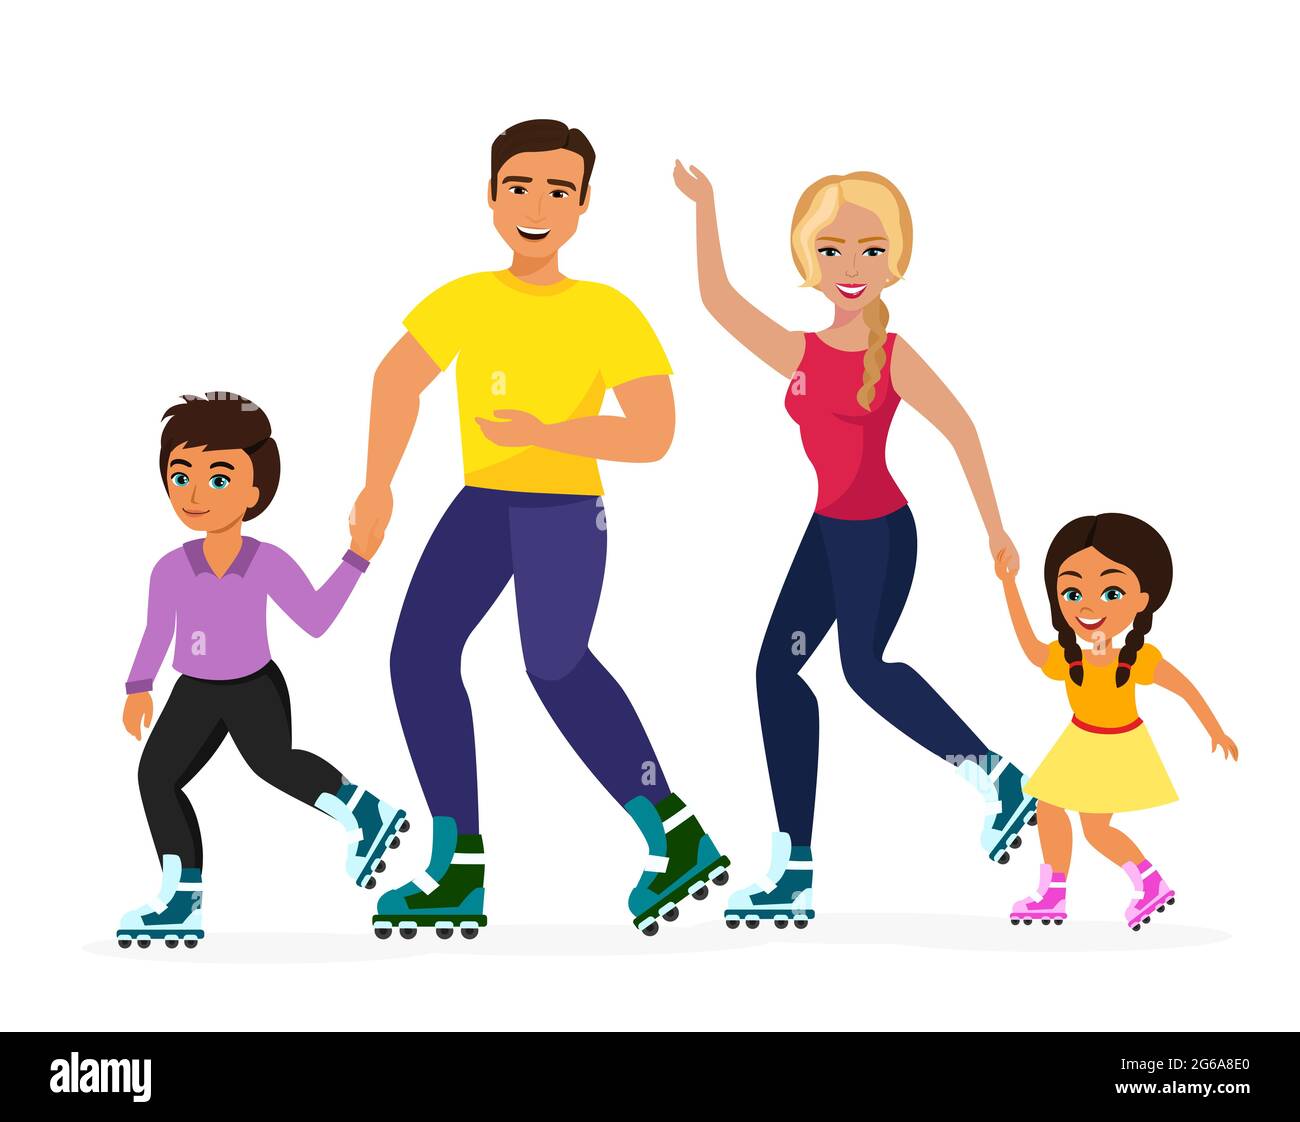 Illustrazione vettoriale del pattinaggio di famiglia smiley su sfondo bianco. Famiglia dello sport, madre, padre, fratello e figlio felici insieme. Vita sana Illustrazione Vettoriale